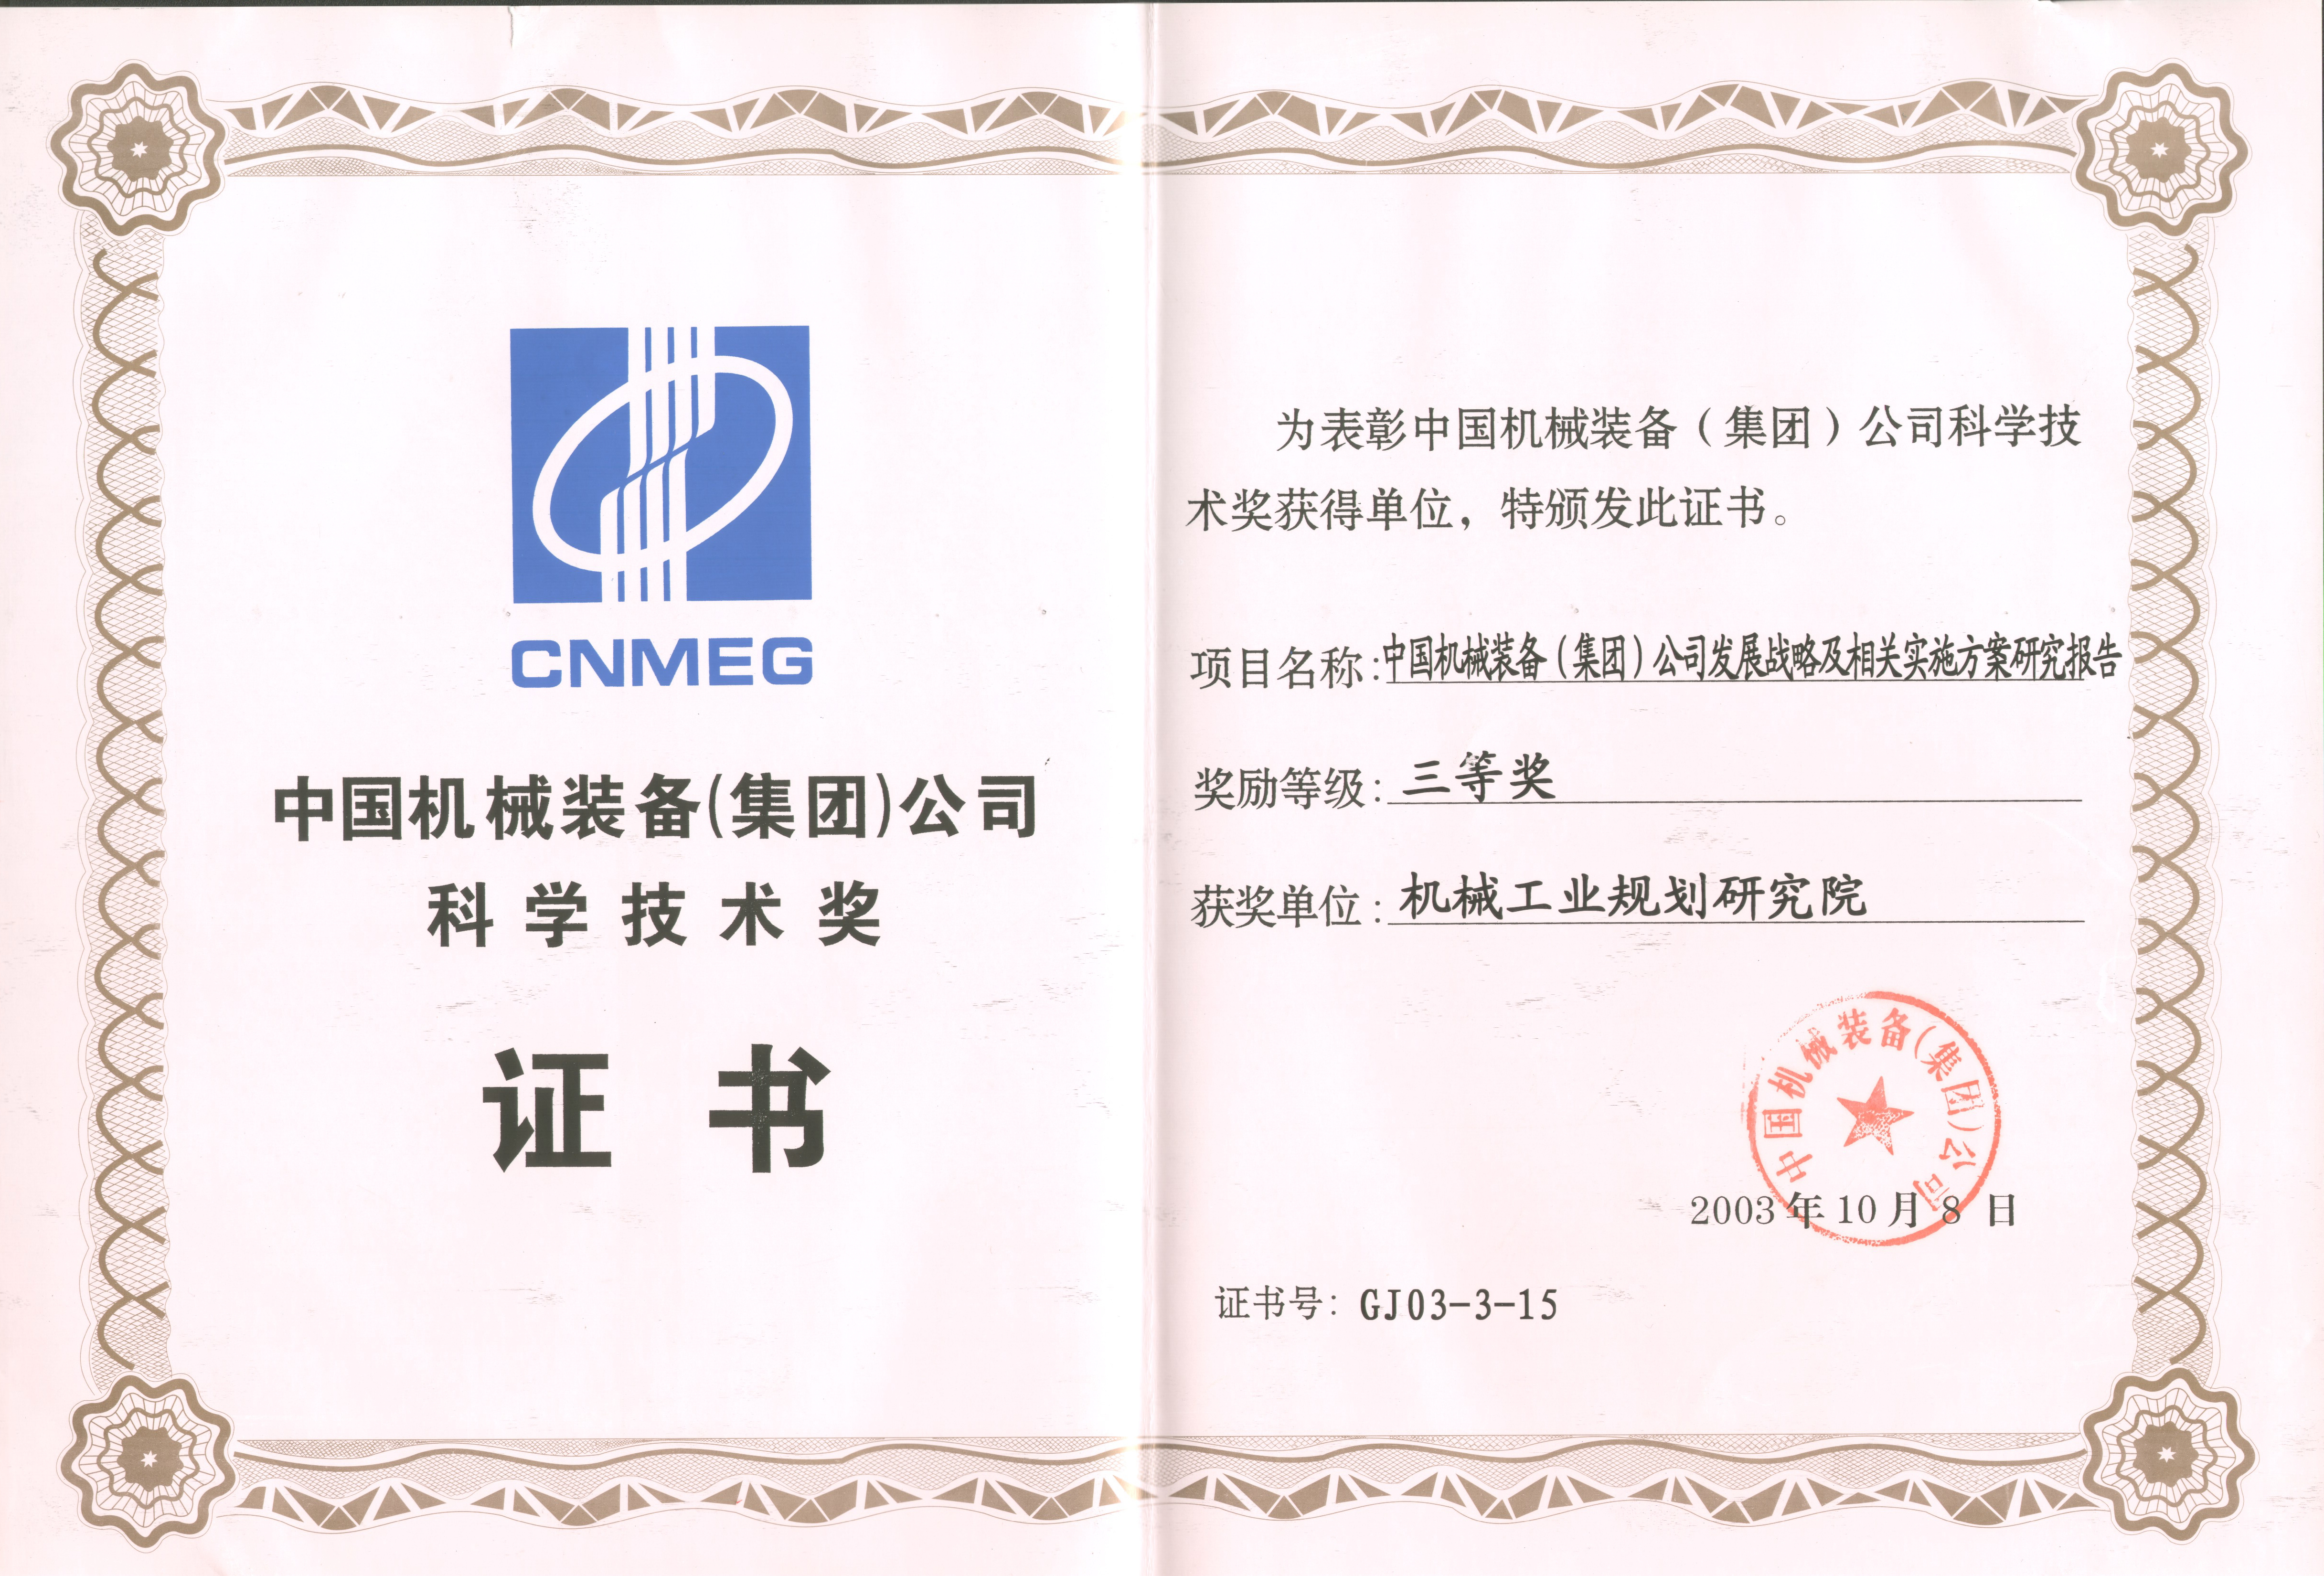 2003年中国机械装备集团公司发展战略研究报告国机集团科学技术三等奖－.jpg